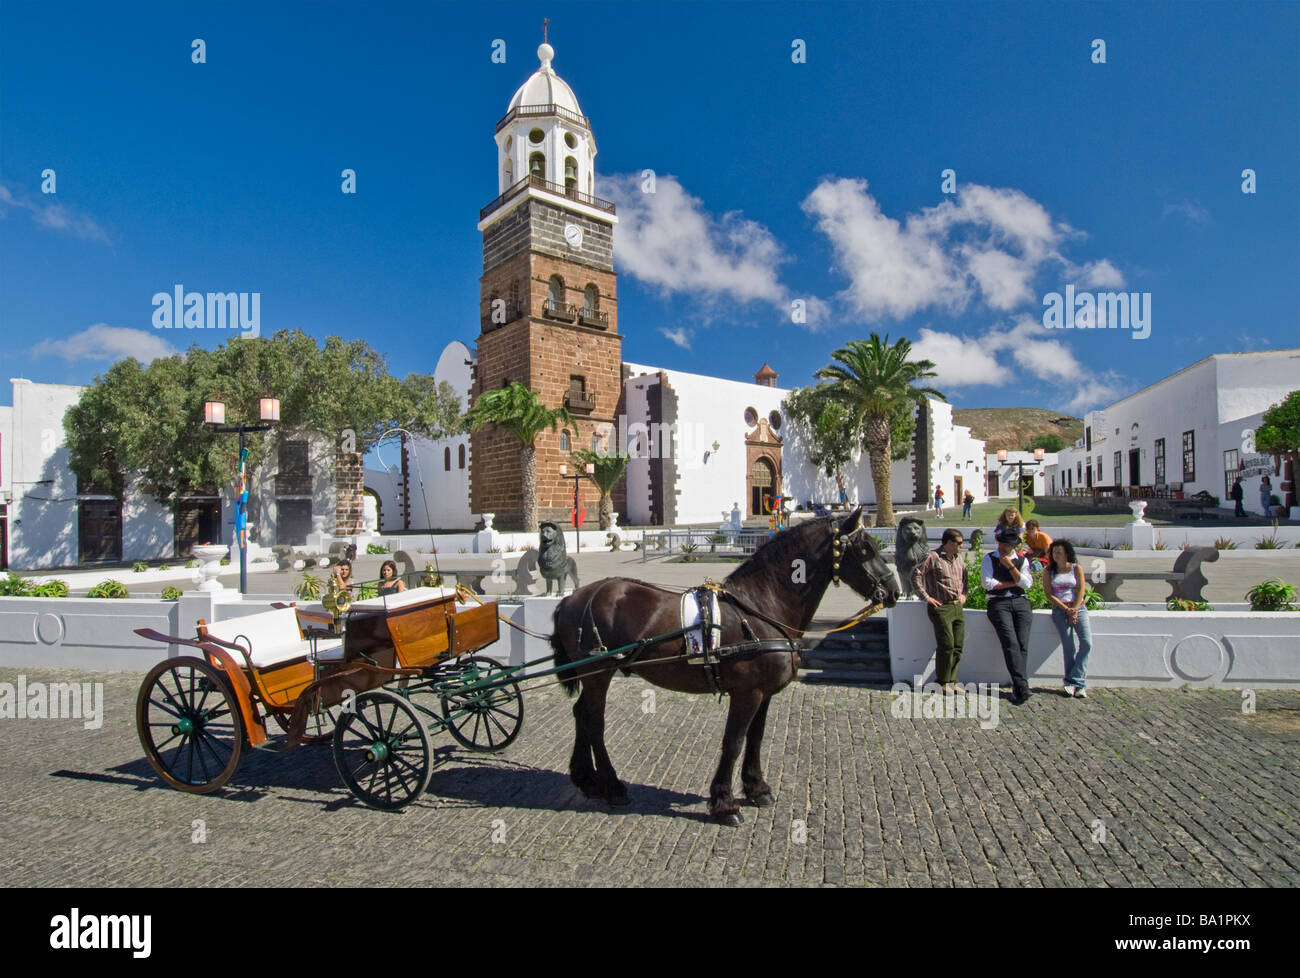 Teguise Lanzarote traditionnel typique de la vieille ville et balade en calèche Cheval debout dans la place principale de la vieille ville de Teguise Lanzarote Iles Canaries Espagne Banque D'Images